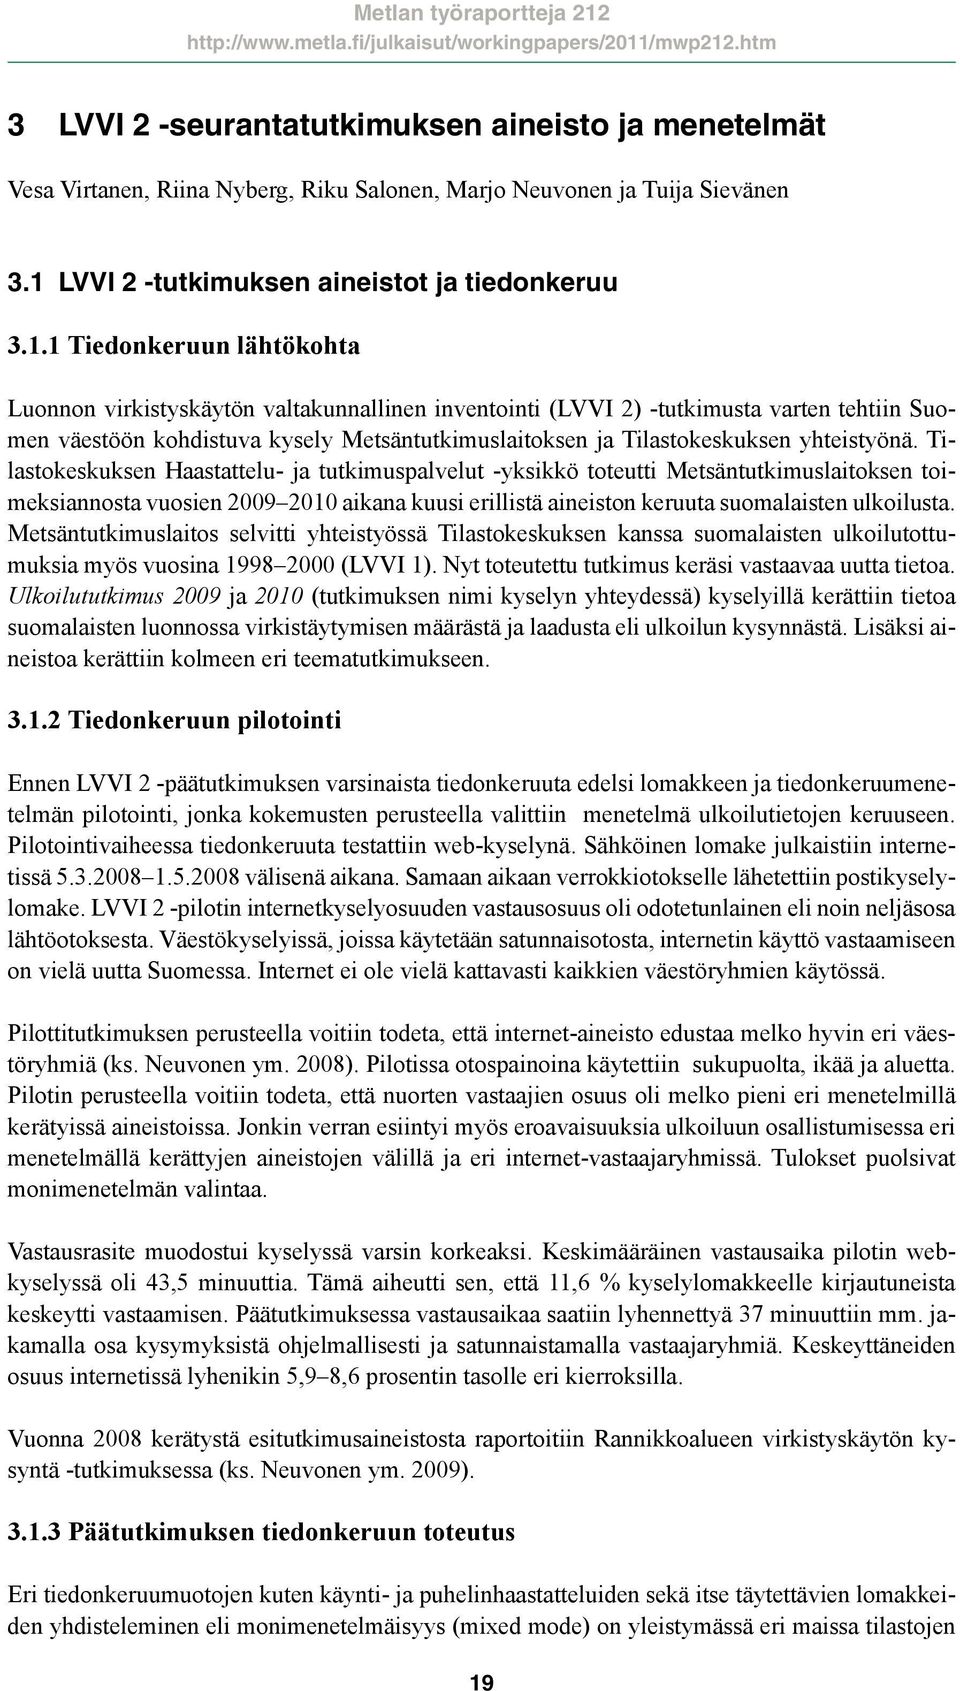 1 Tiedonkeruun lähtökohta Luonnon virkistyskäytön valtakunnallinen inventointi (LVVI 2) -tutkimusta varten tehtiin Suomen väestöön kohdistuva kysely Metsäntutkimuslaitoksen ja Tilastokeskuksen